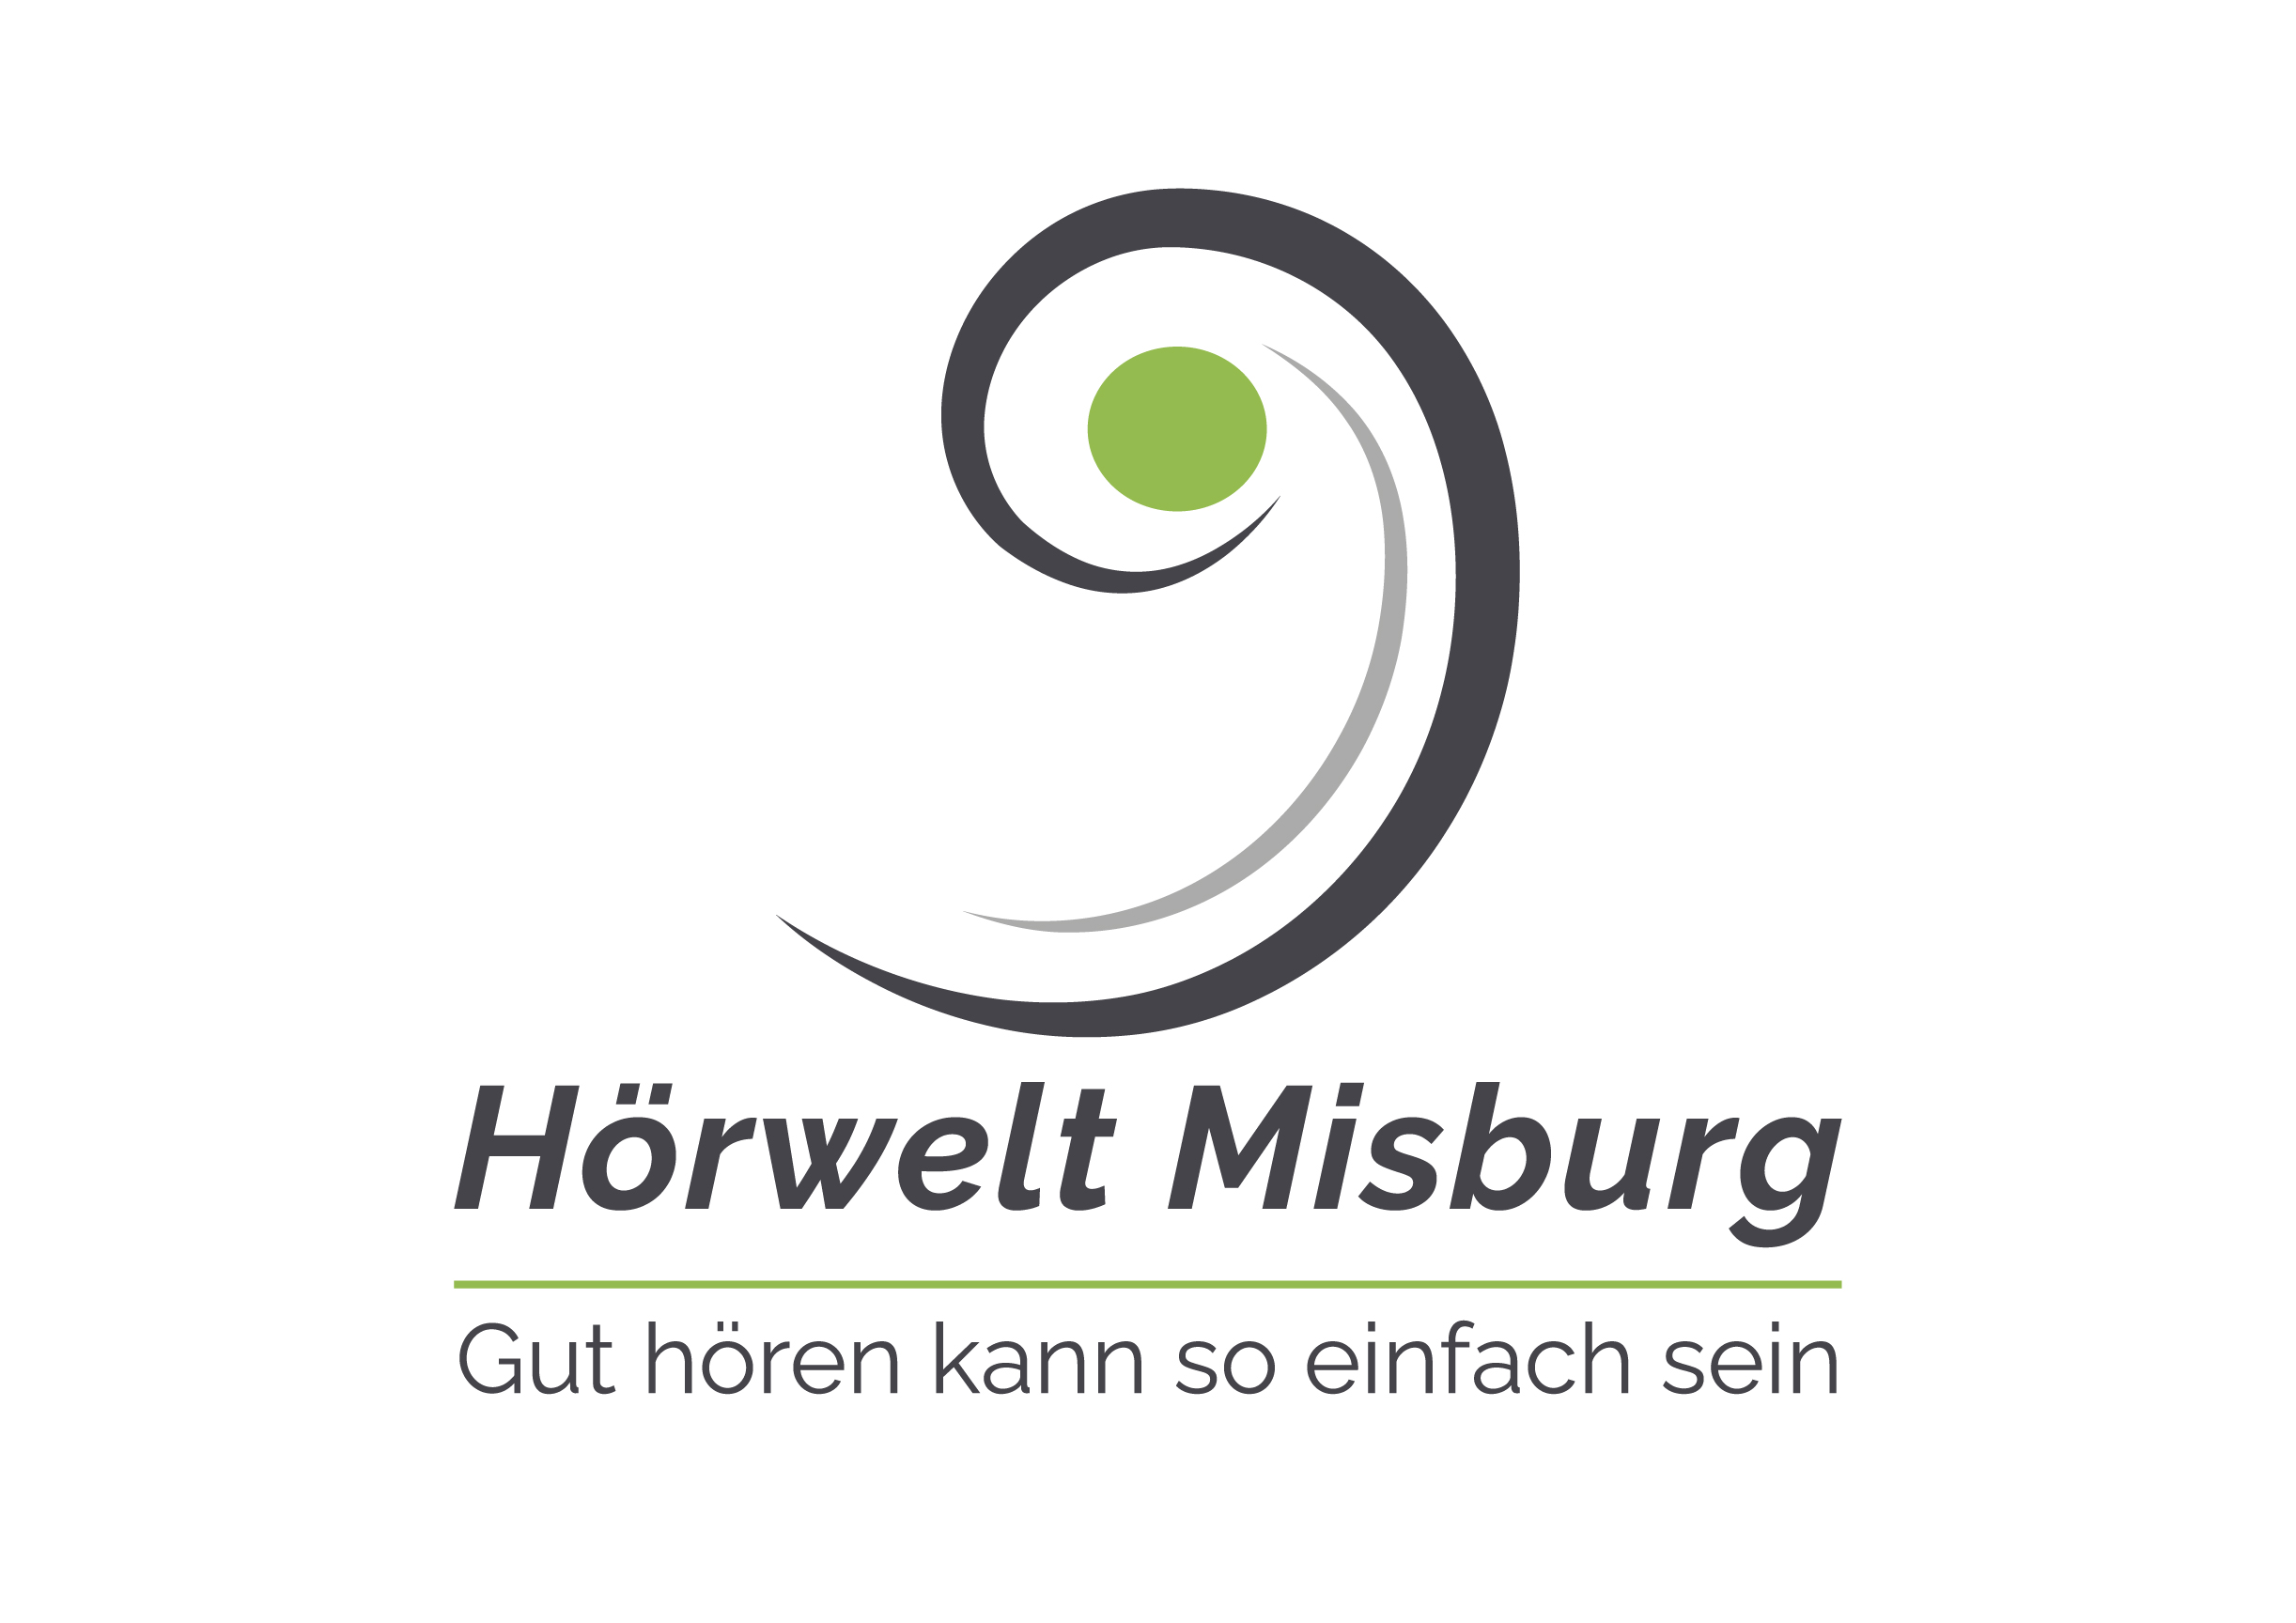 Logo der Firma Hörwelt Misburg aus Hannover